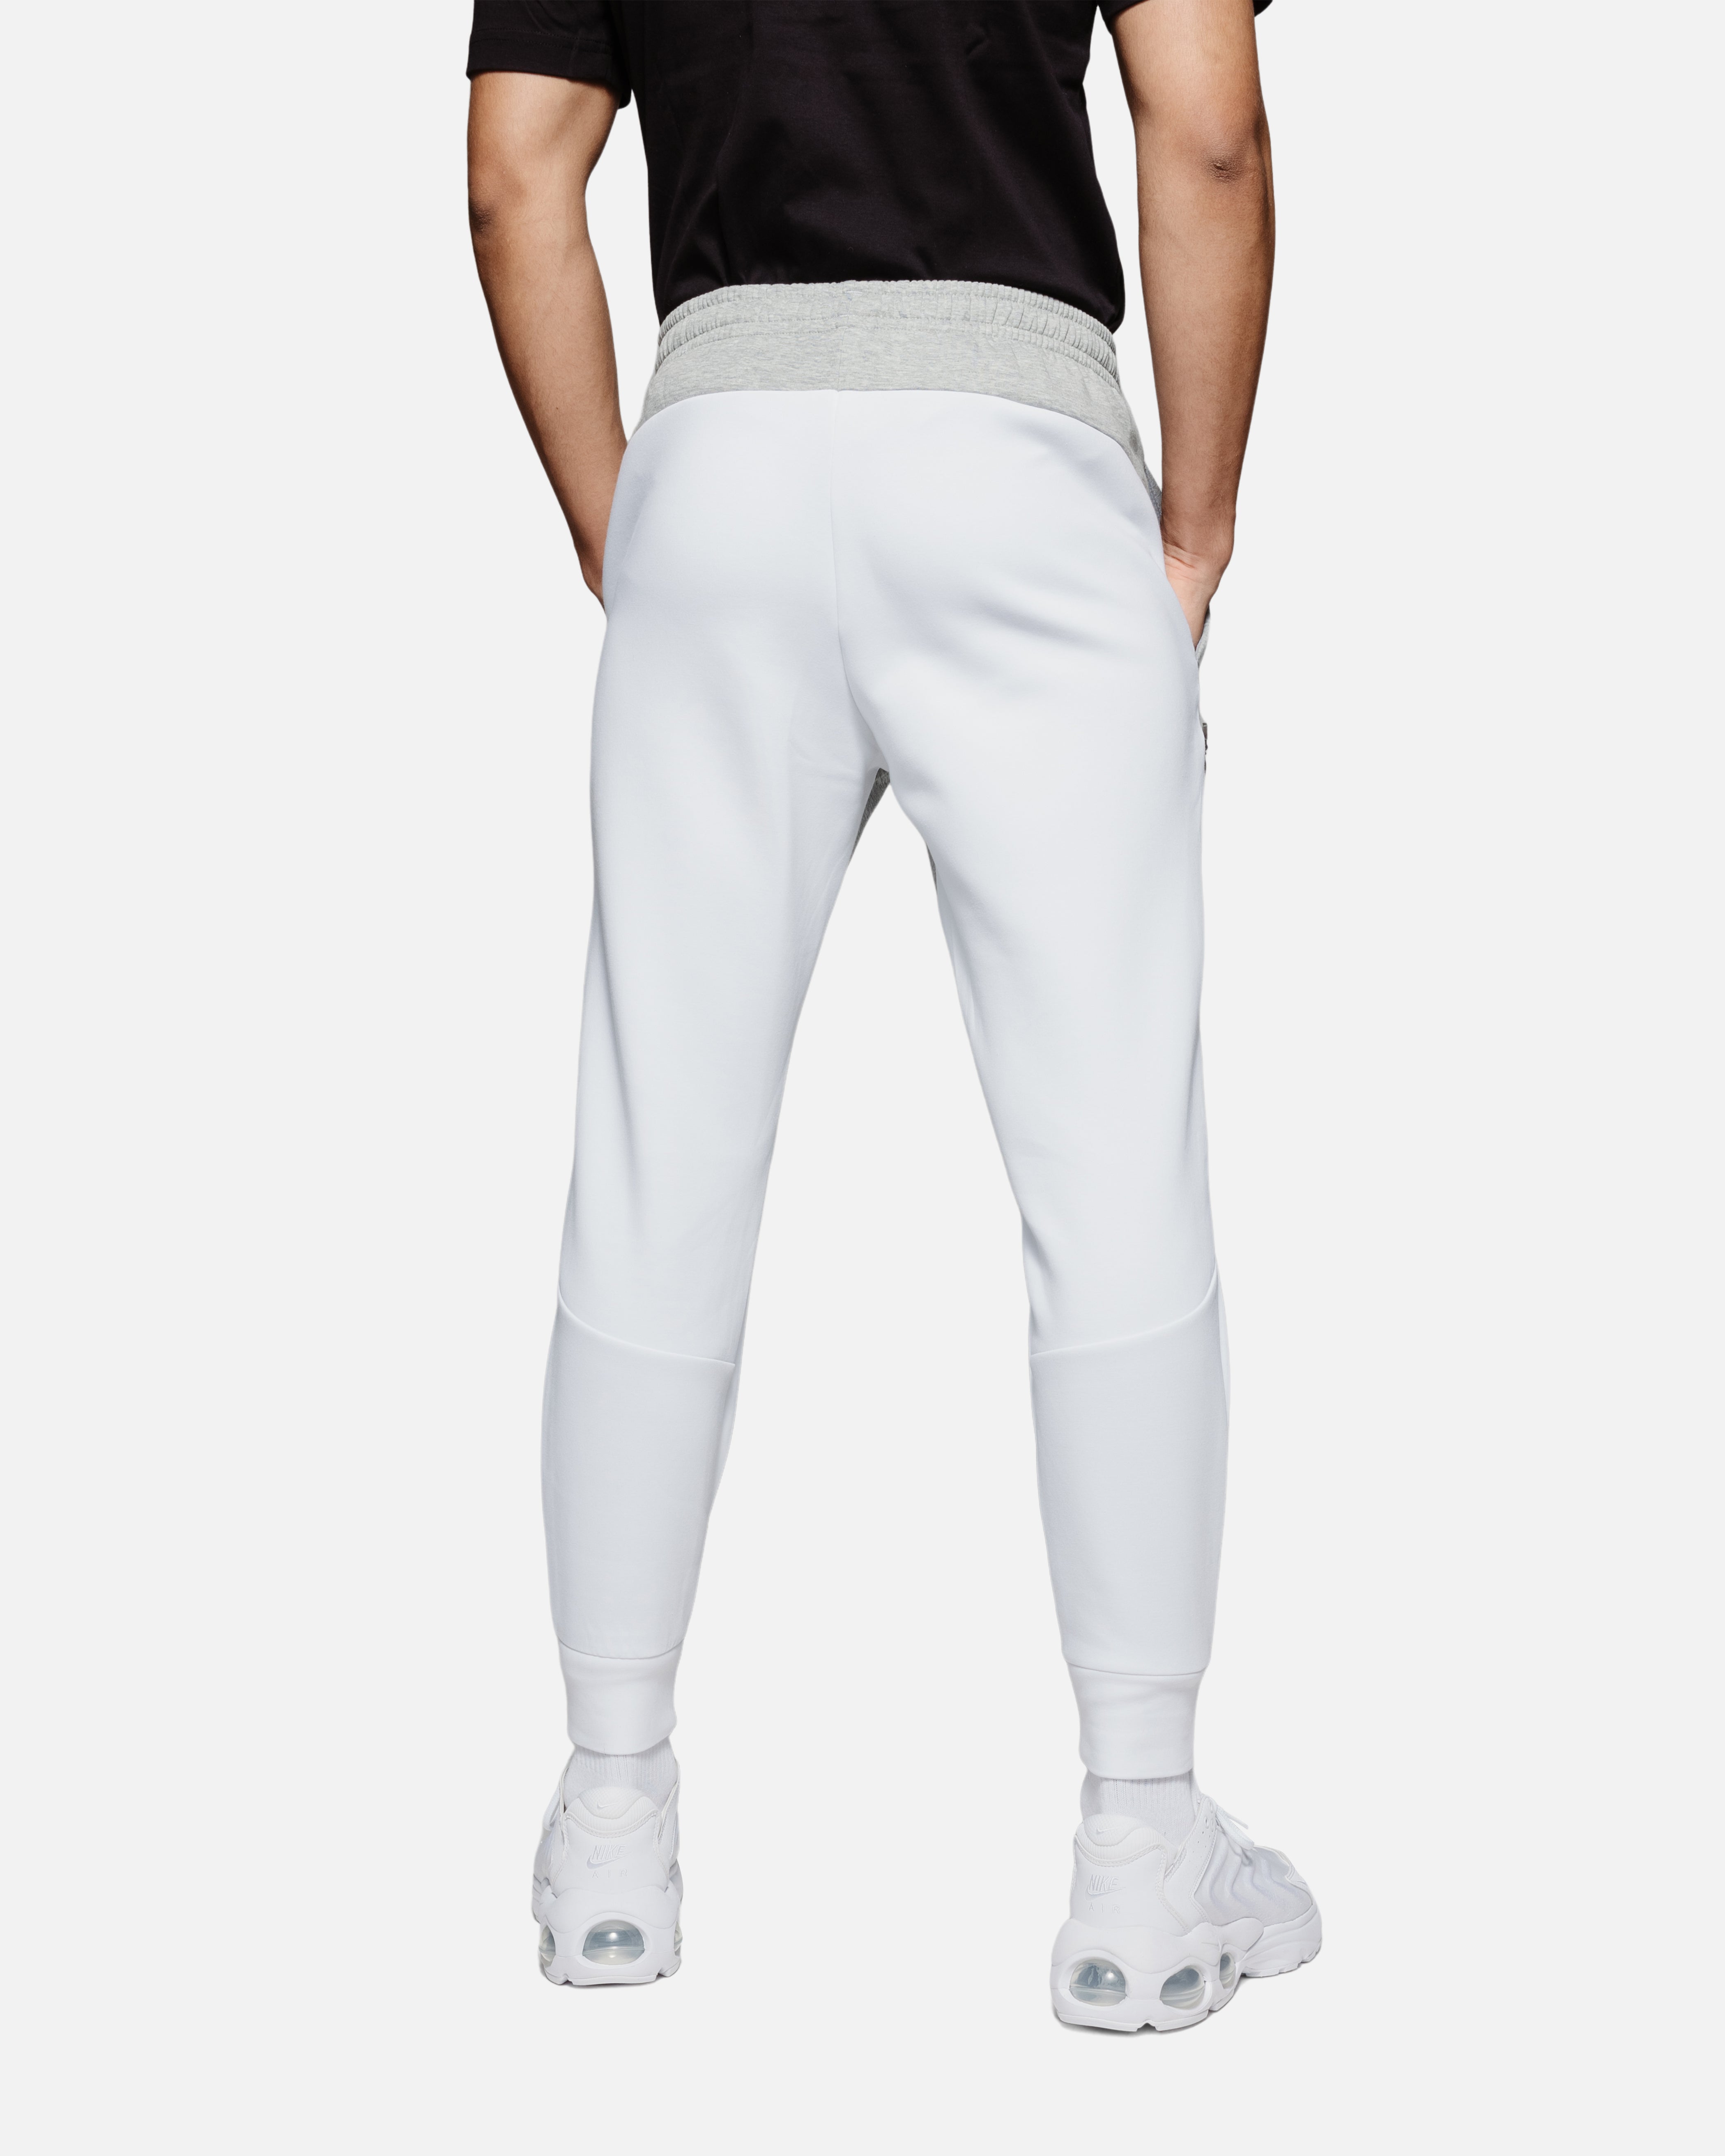 Pantalon Under Armour Unstoppable Fleece - Gris/Blanc